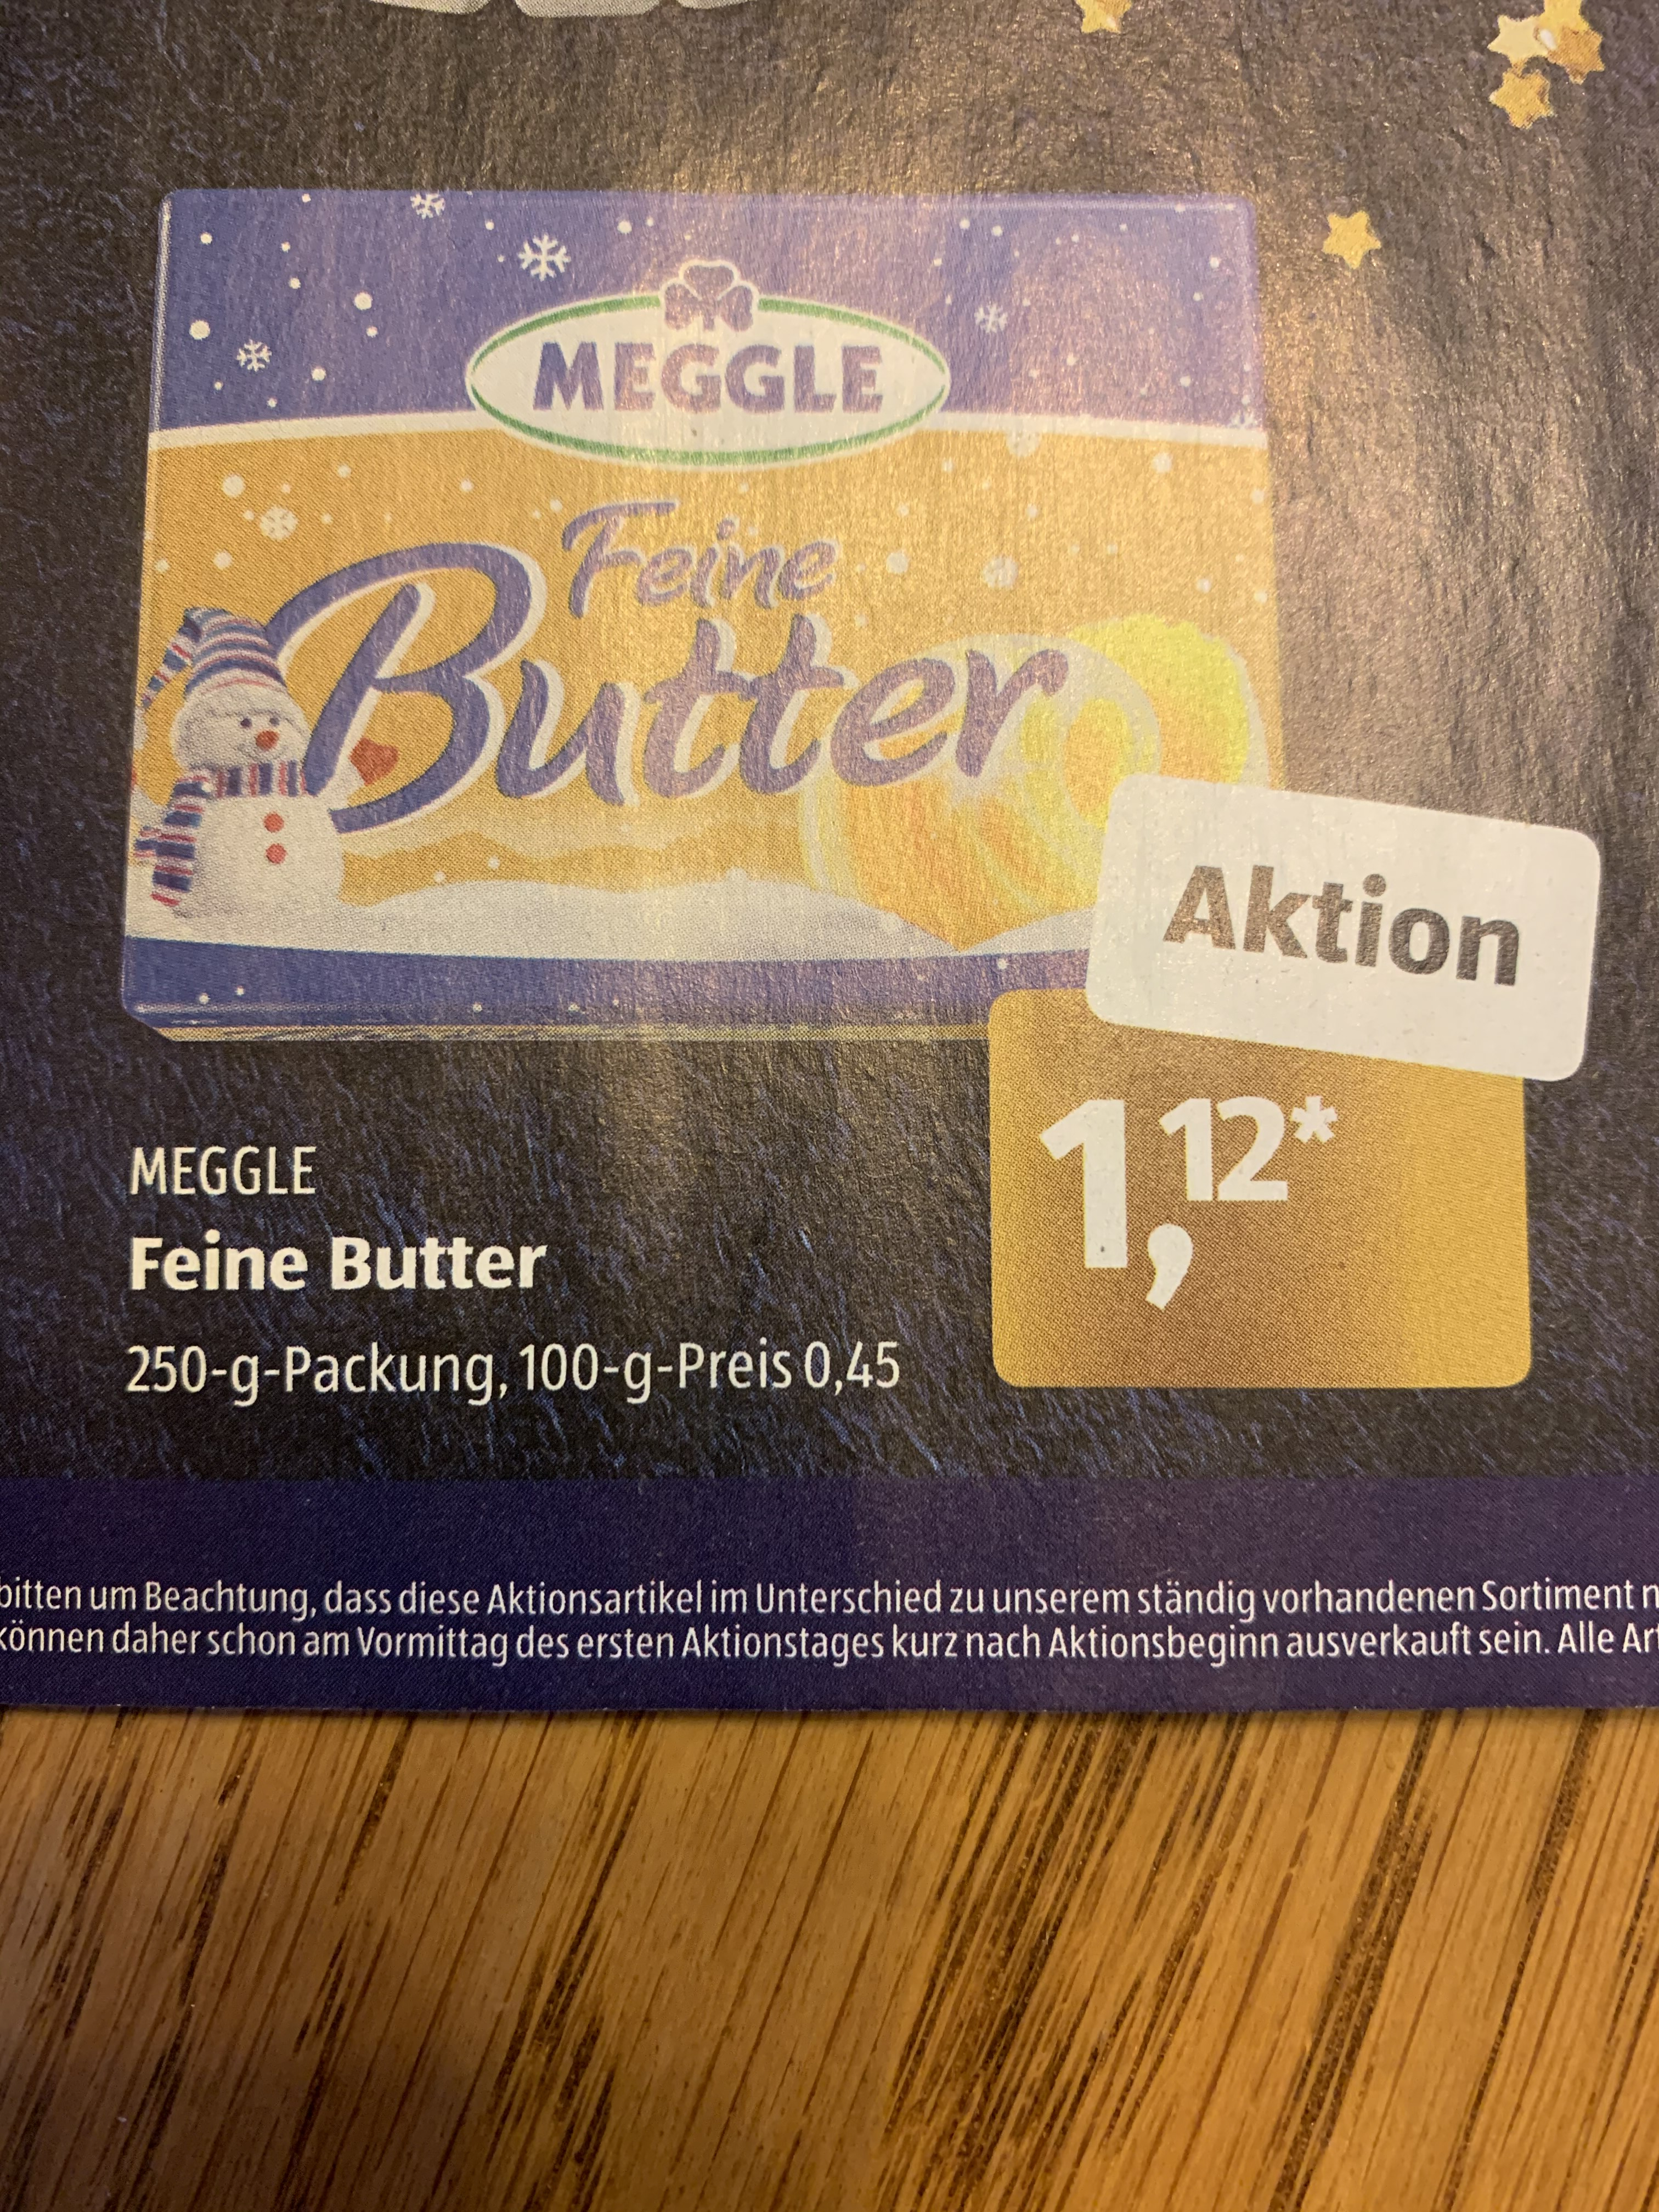 Meggle Butter 250g Bei Aldi Sud Mydealz De